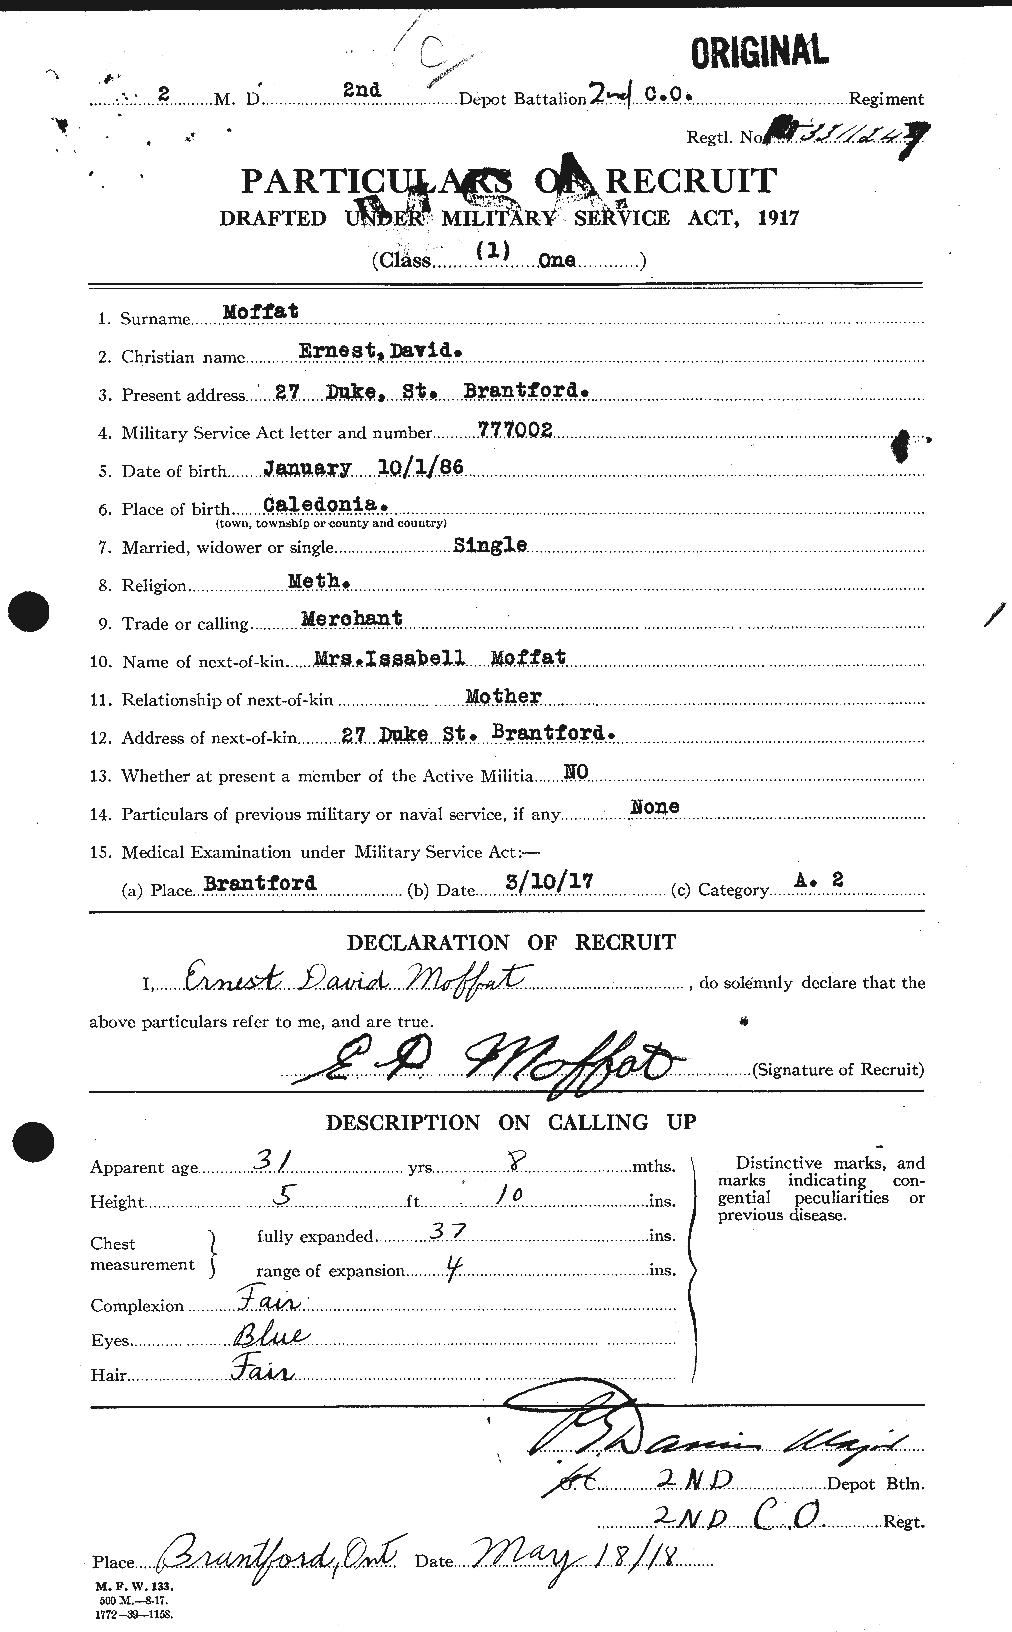 Dossiers du Personnel de la Première Guerre mondiale - CEC 499010a